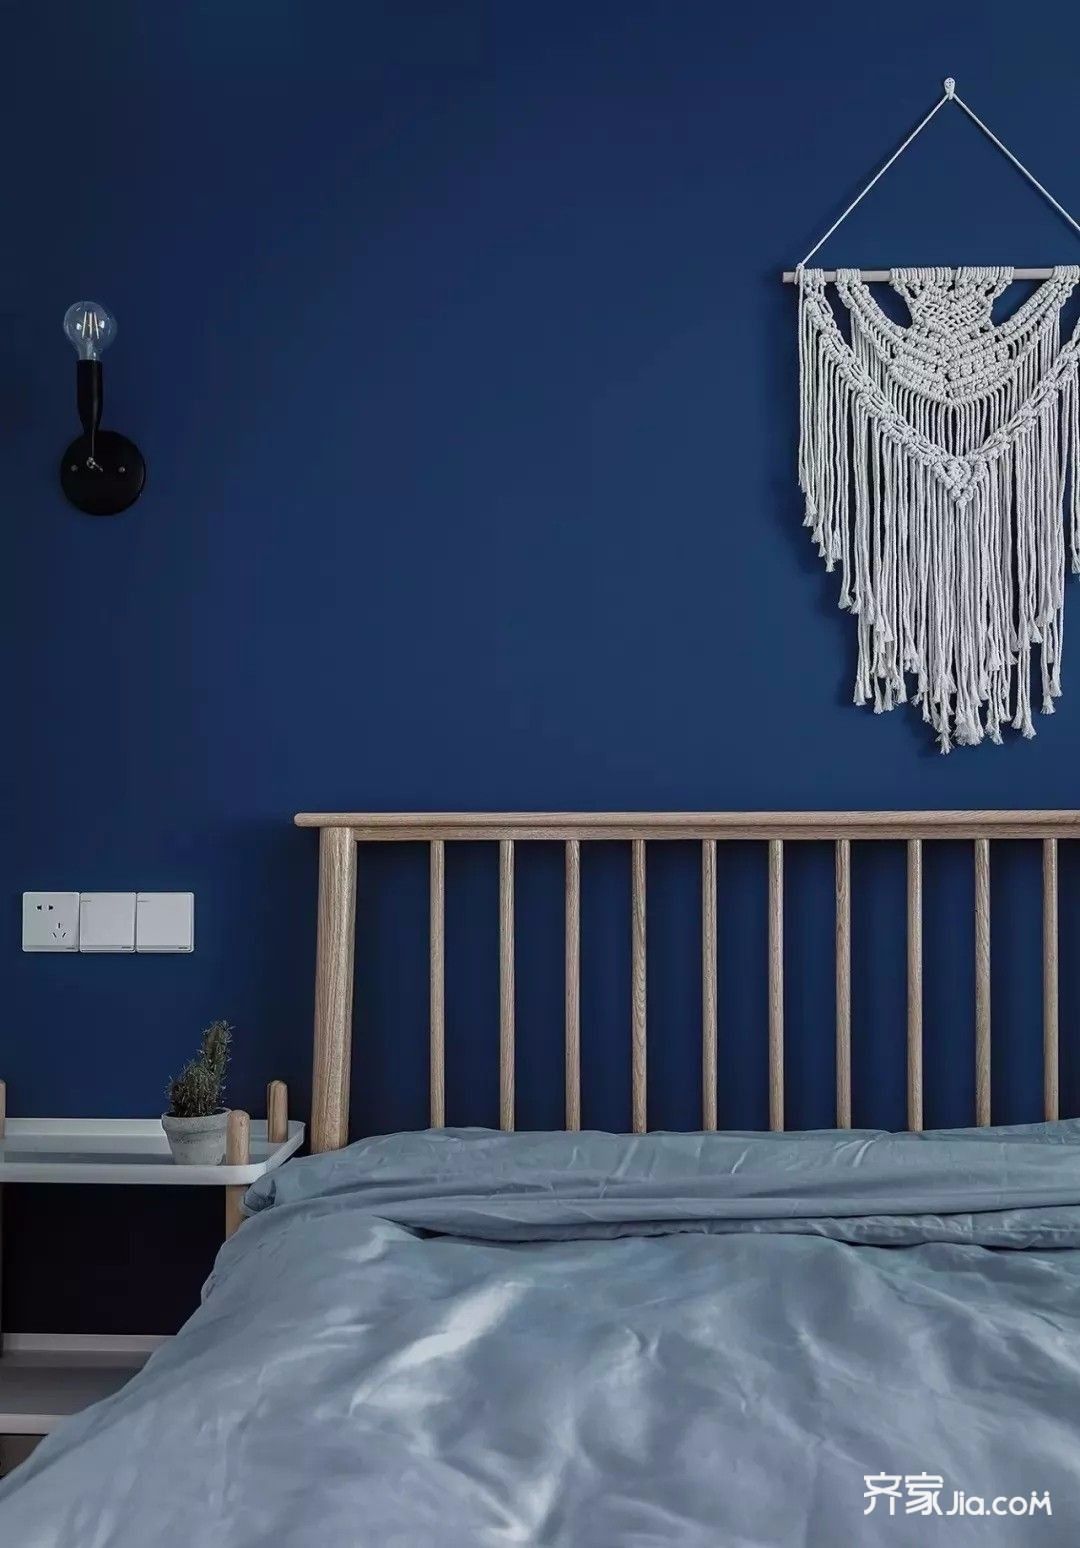 灰蓝色的床品与灰色窗帘,卧室空间更显宁静优雅